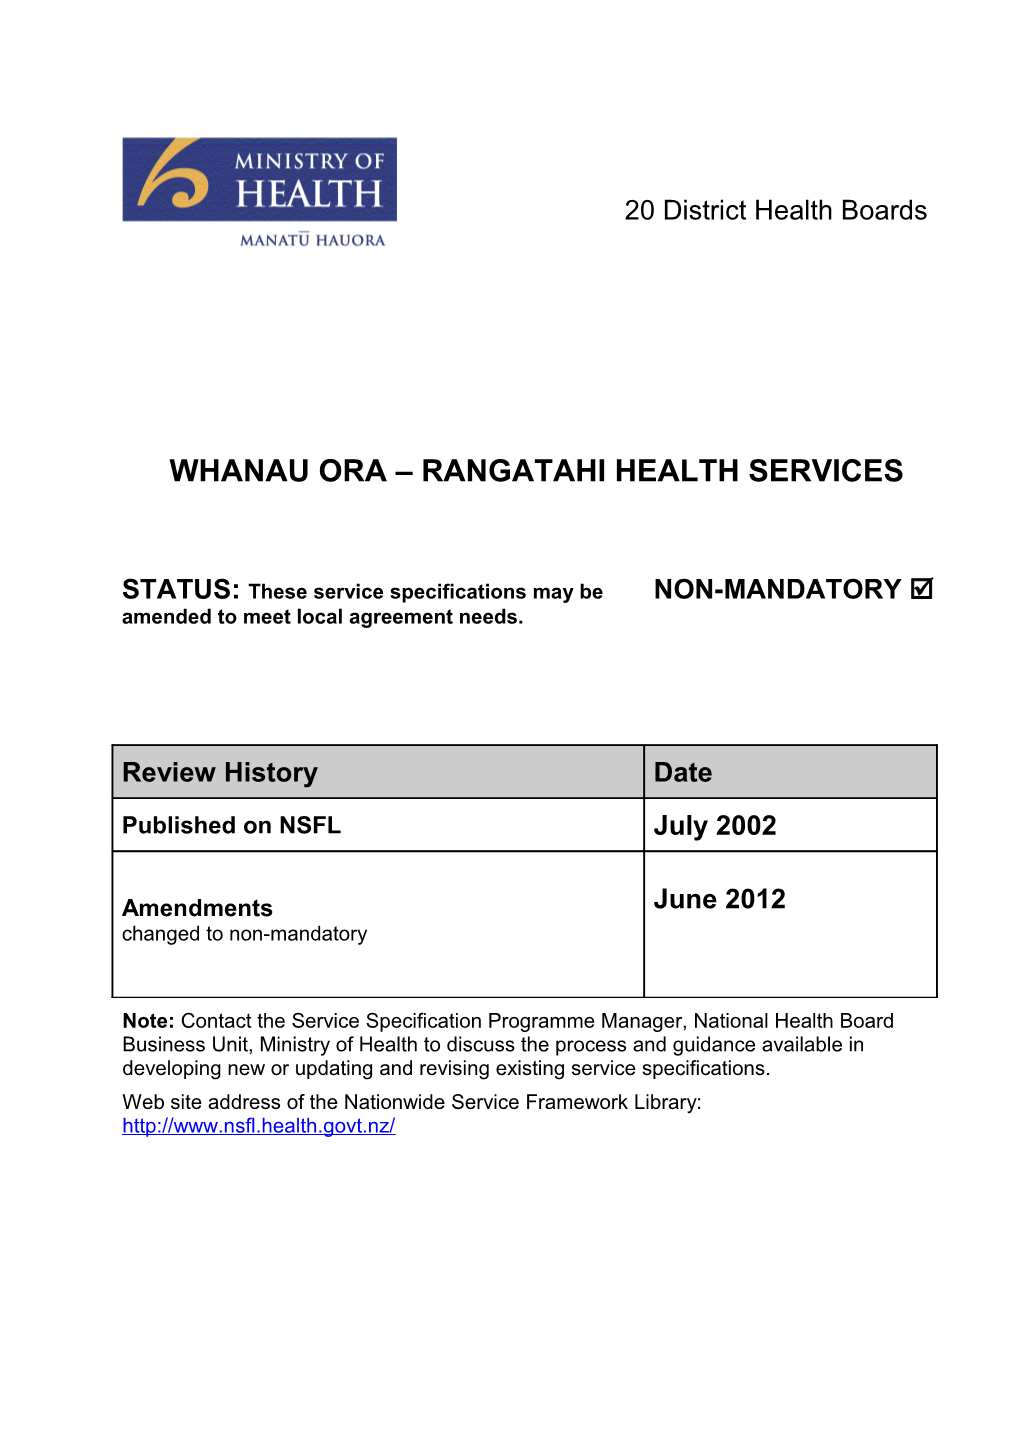 Whanau Ora Rangatahi Health Services